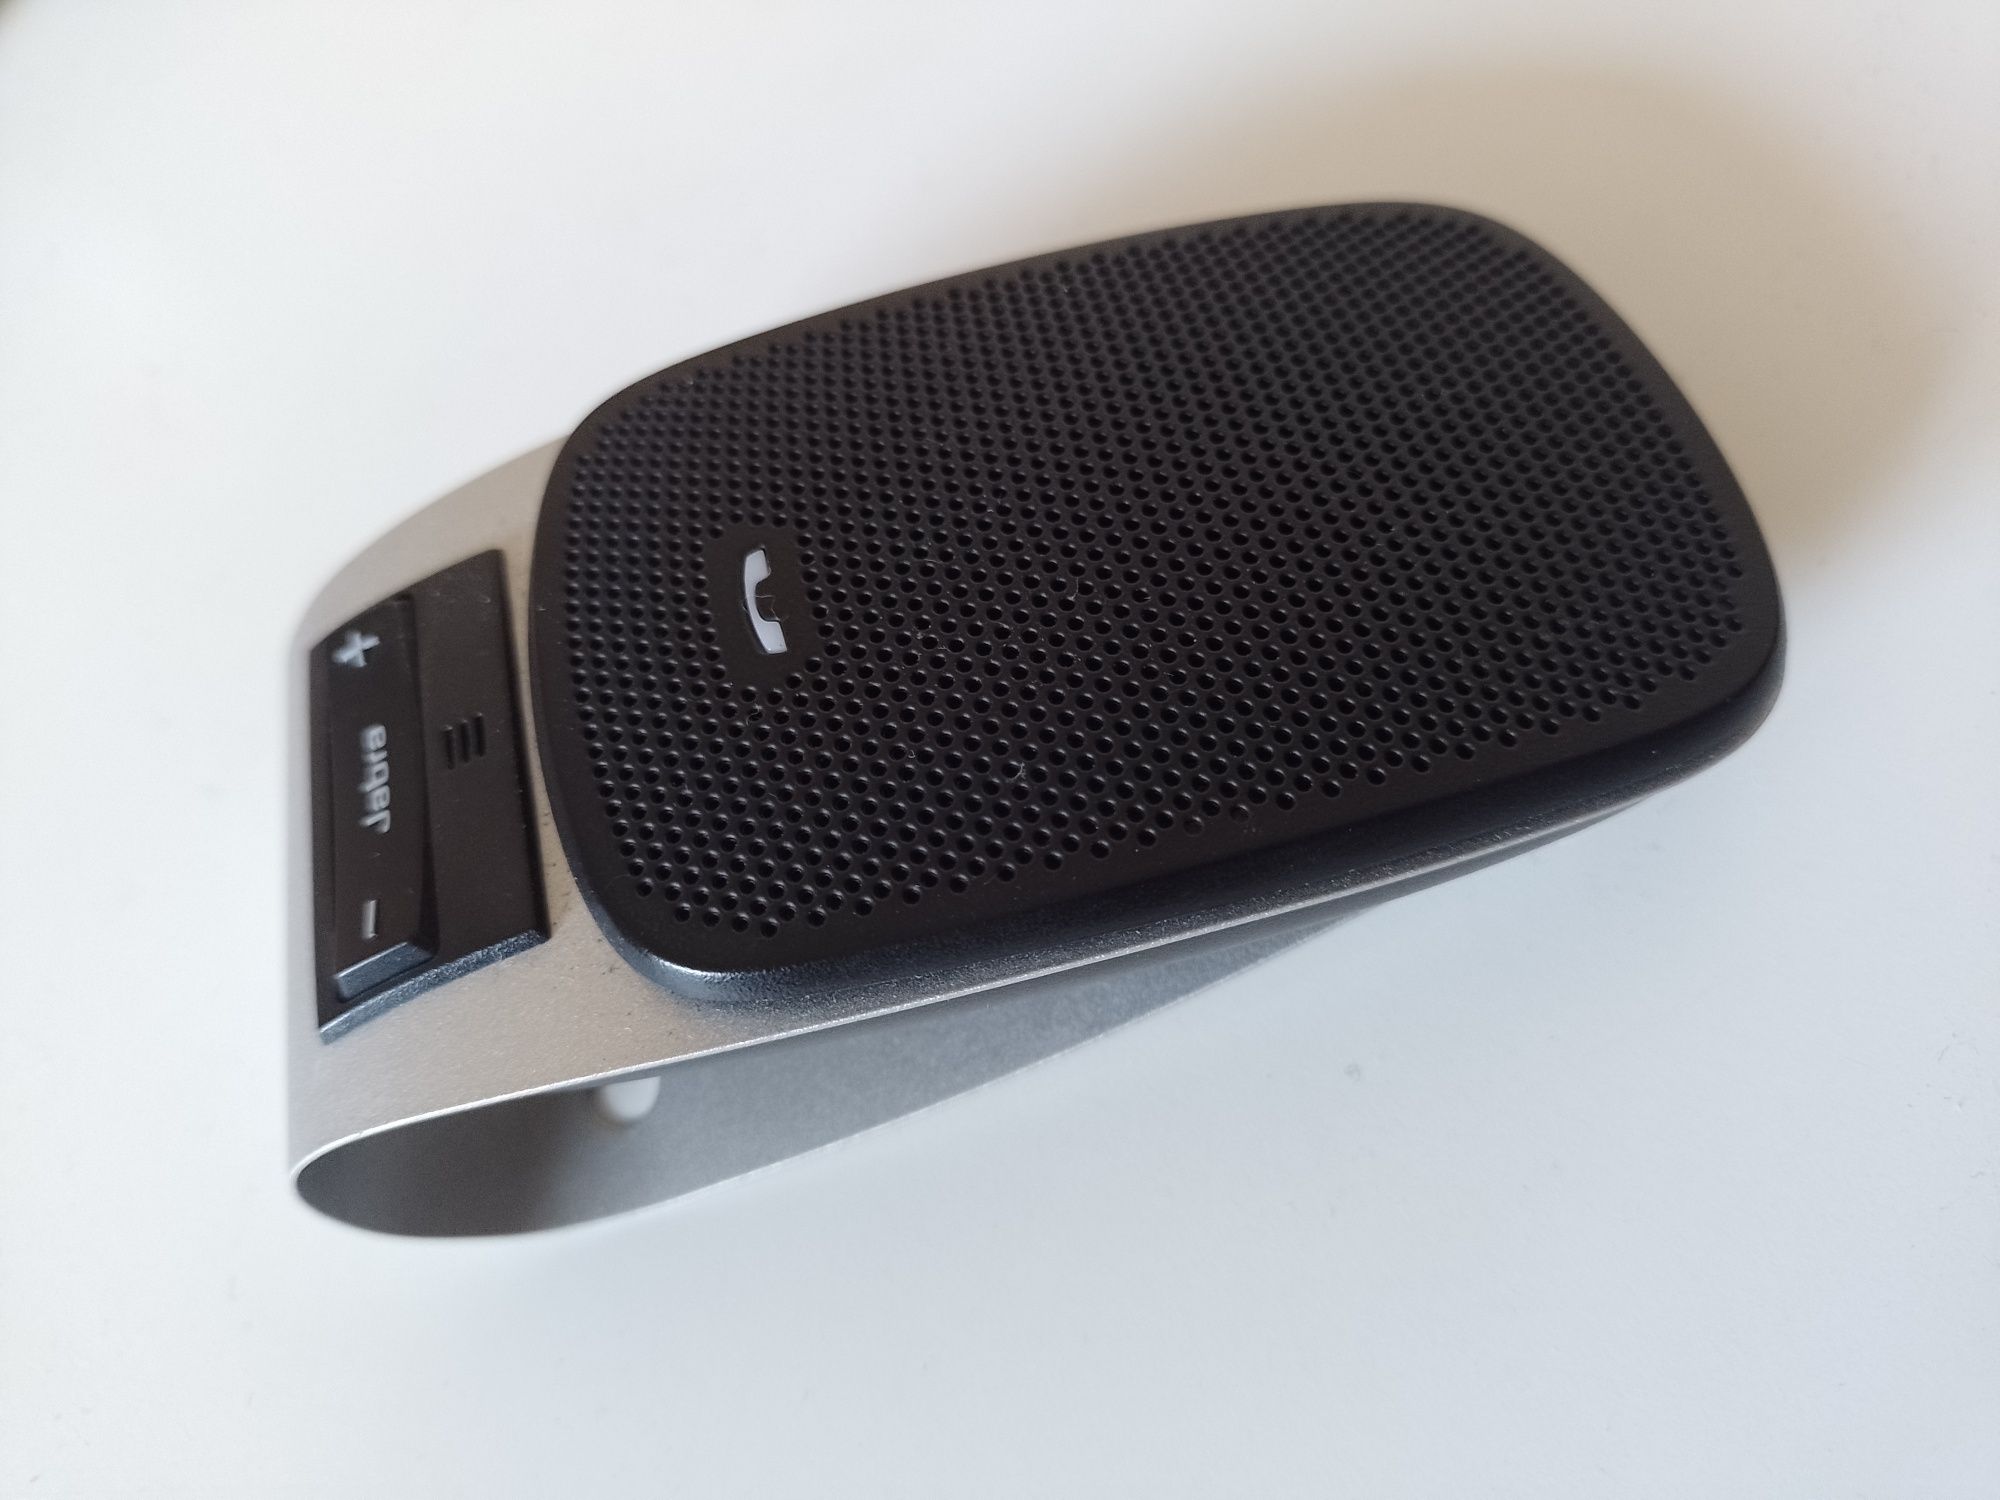 Jabra bezprzewodowy zestaw słuchawkowy Bluetooth 3.0 drive